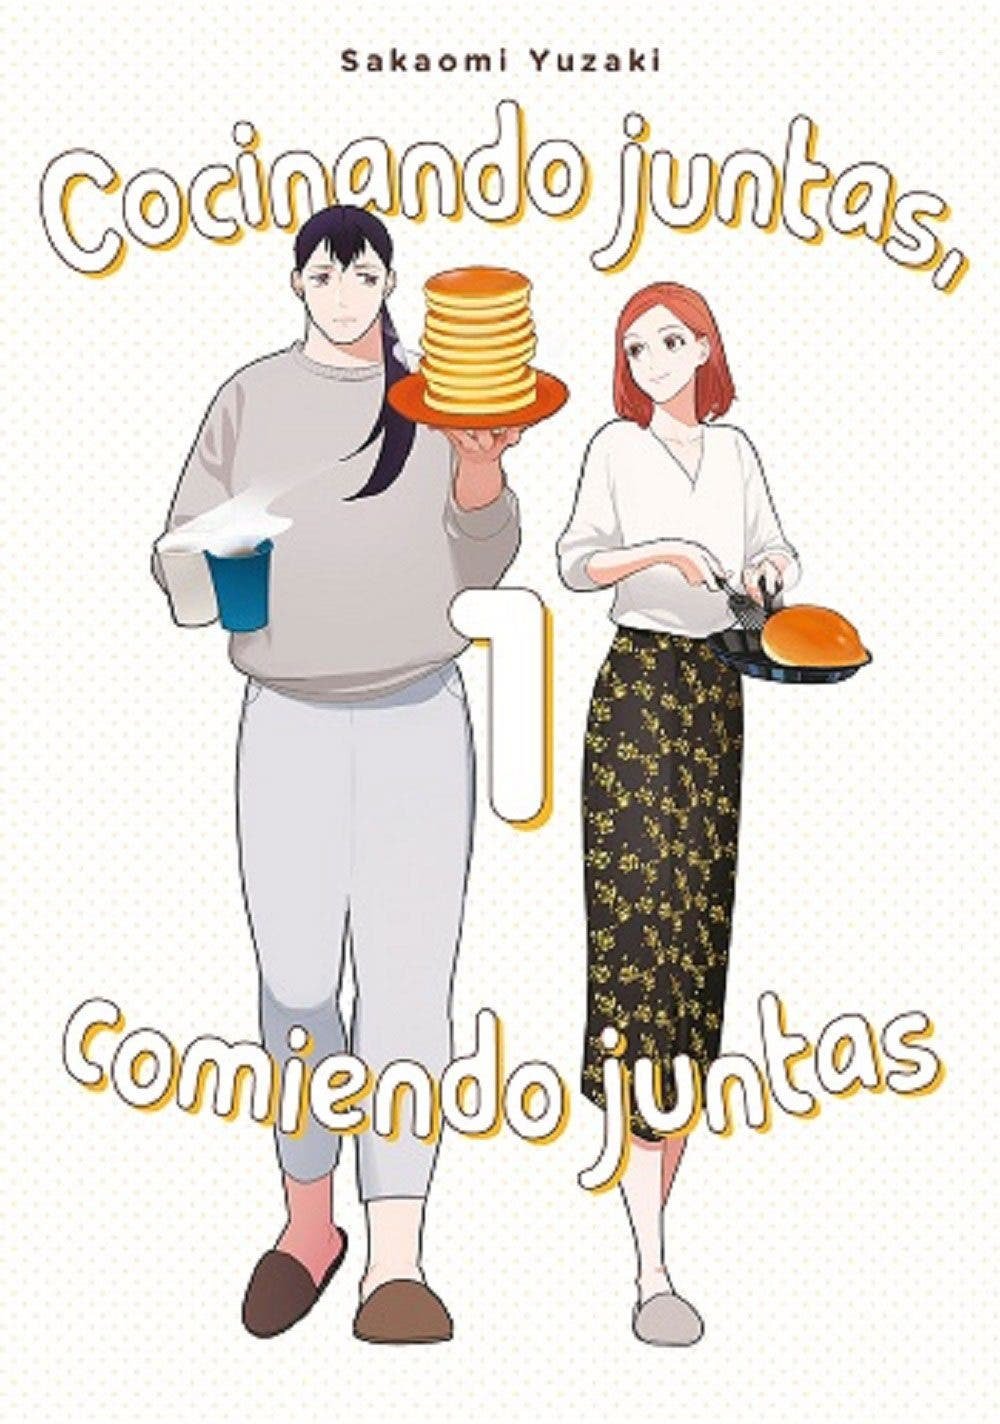 Portada del manga "Cocinando juntas, comiendo juntas"